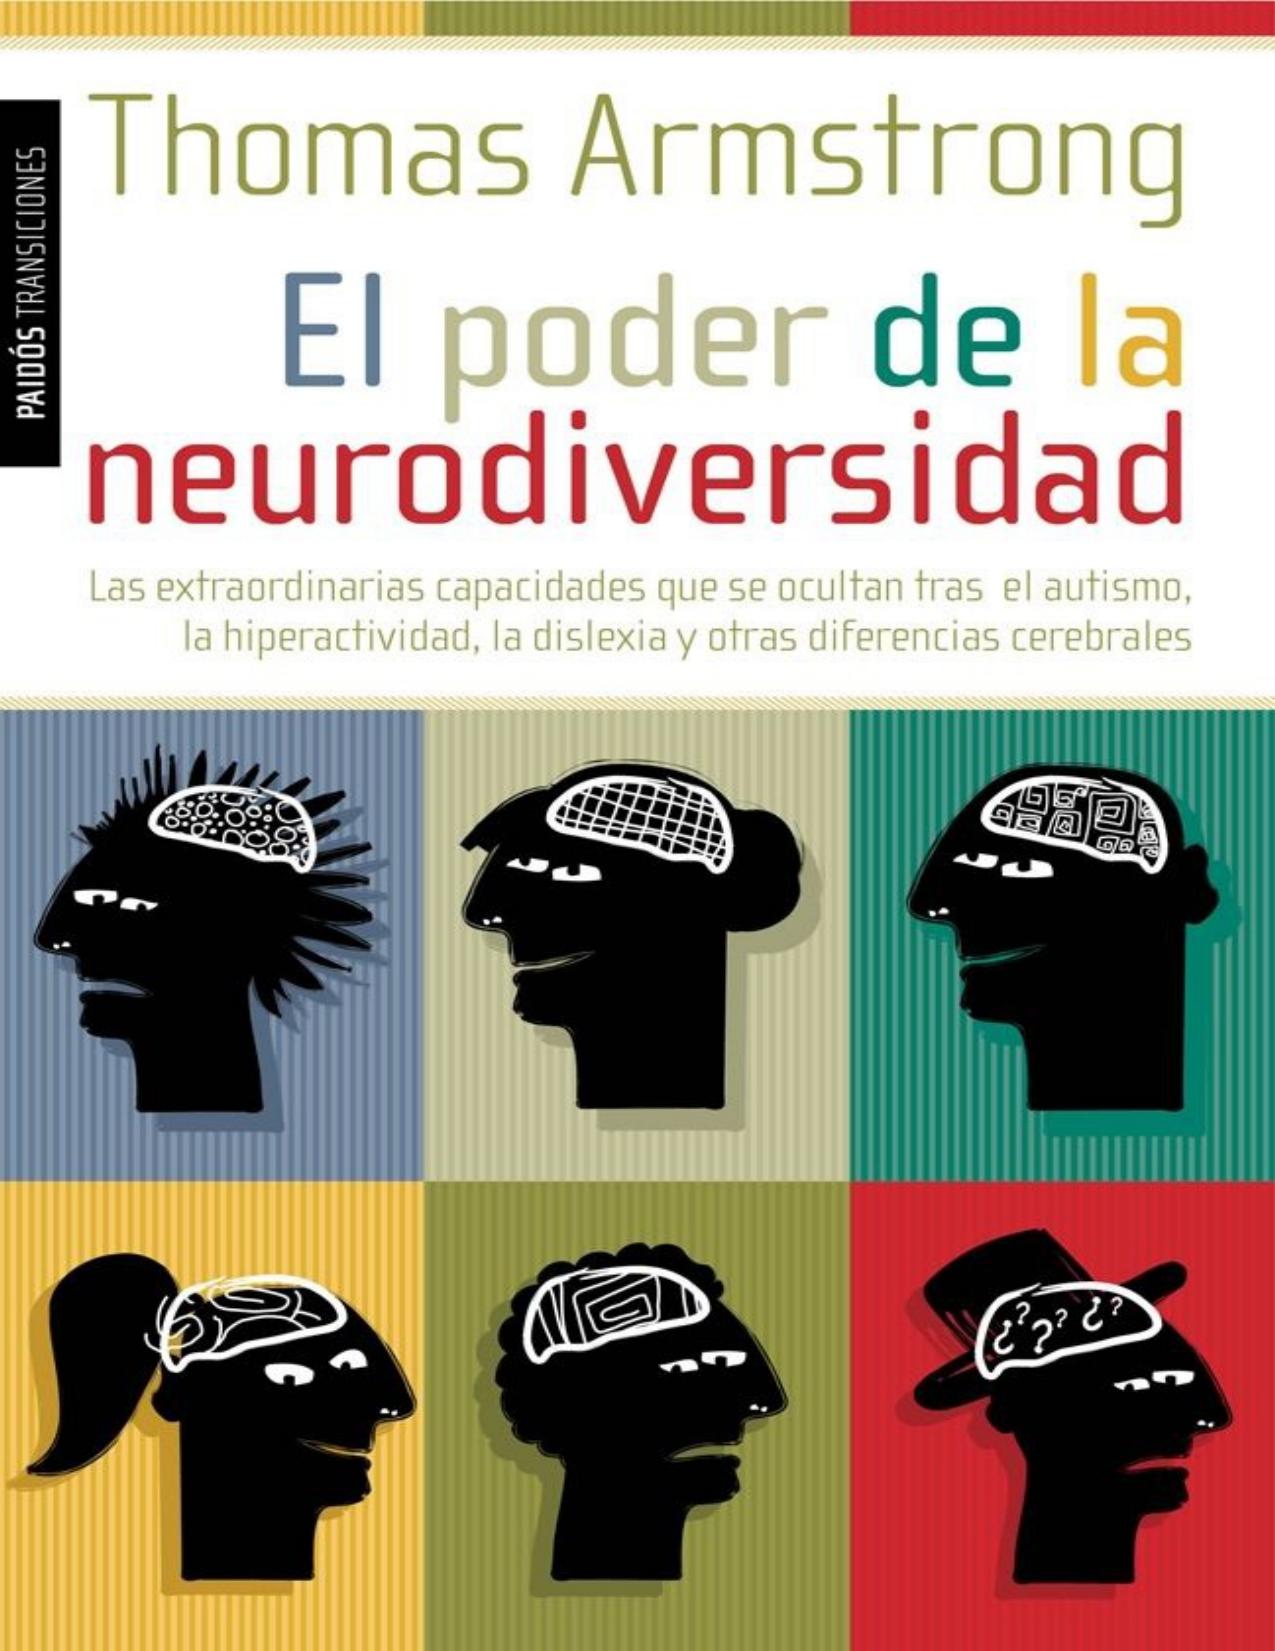 El poder de la neurodiversidad (Spanish Edition)